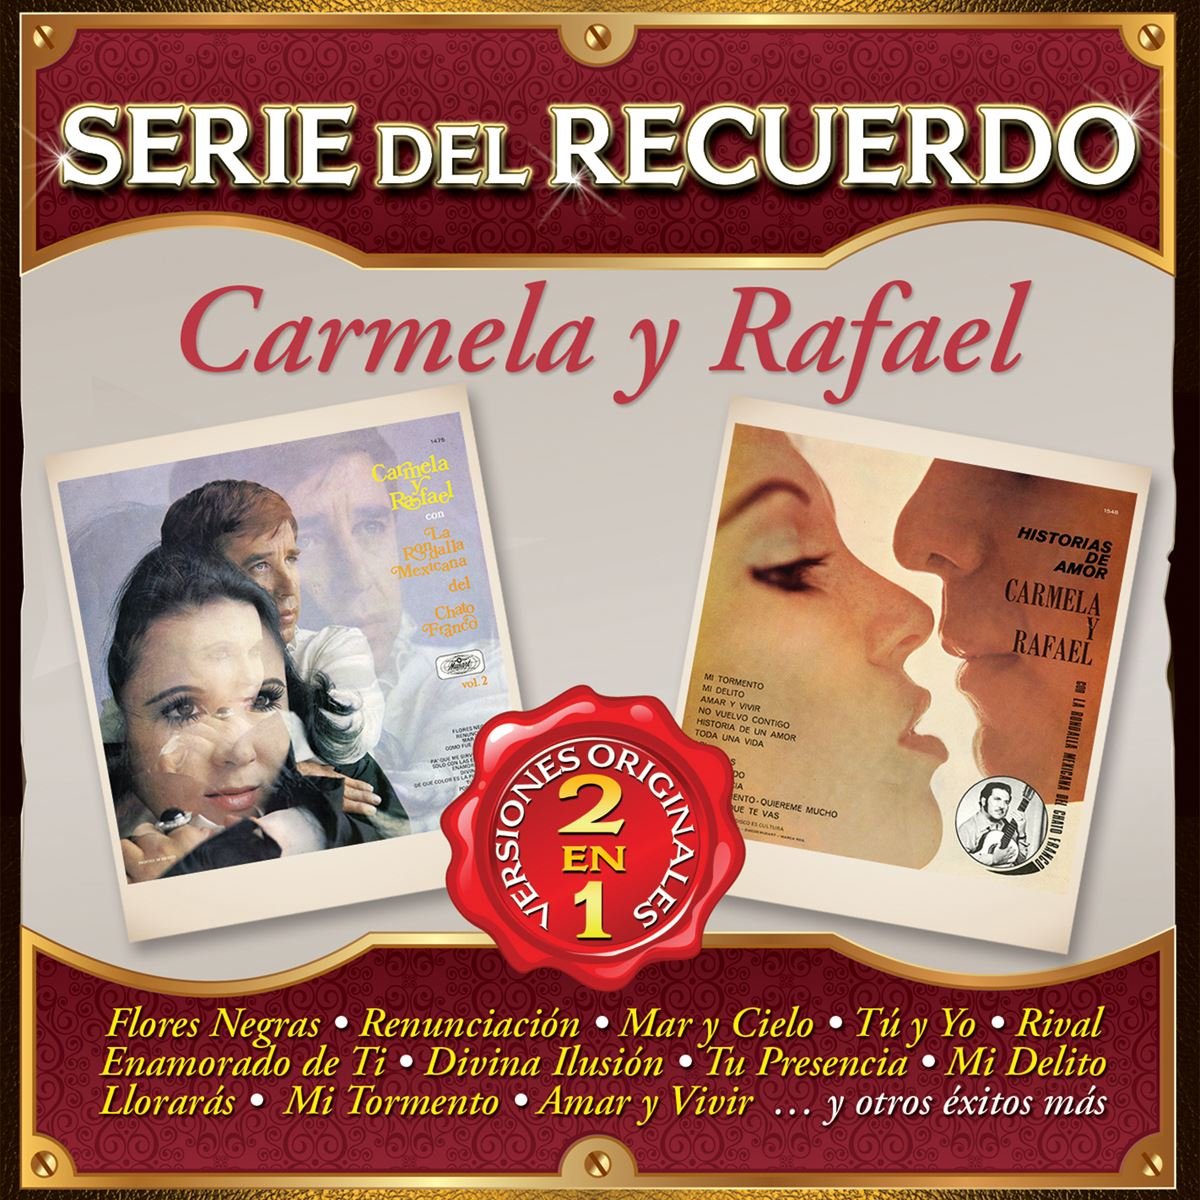 Serie del Recuerdo 2 en 1 Carmela y Rafael